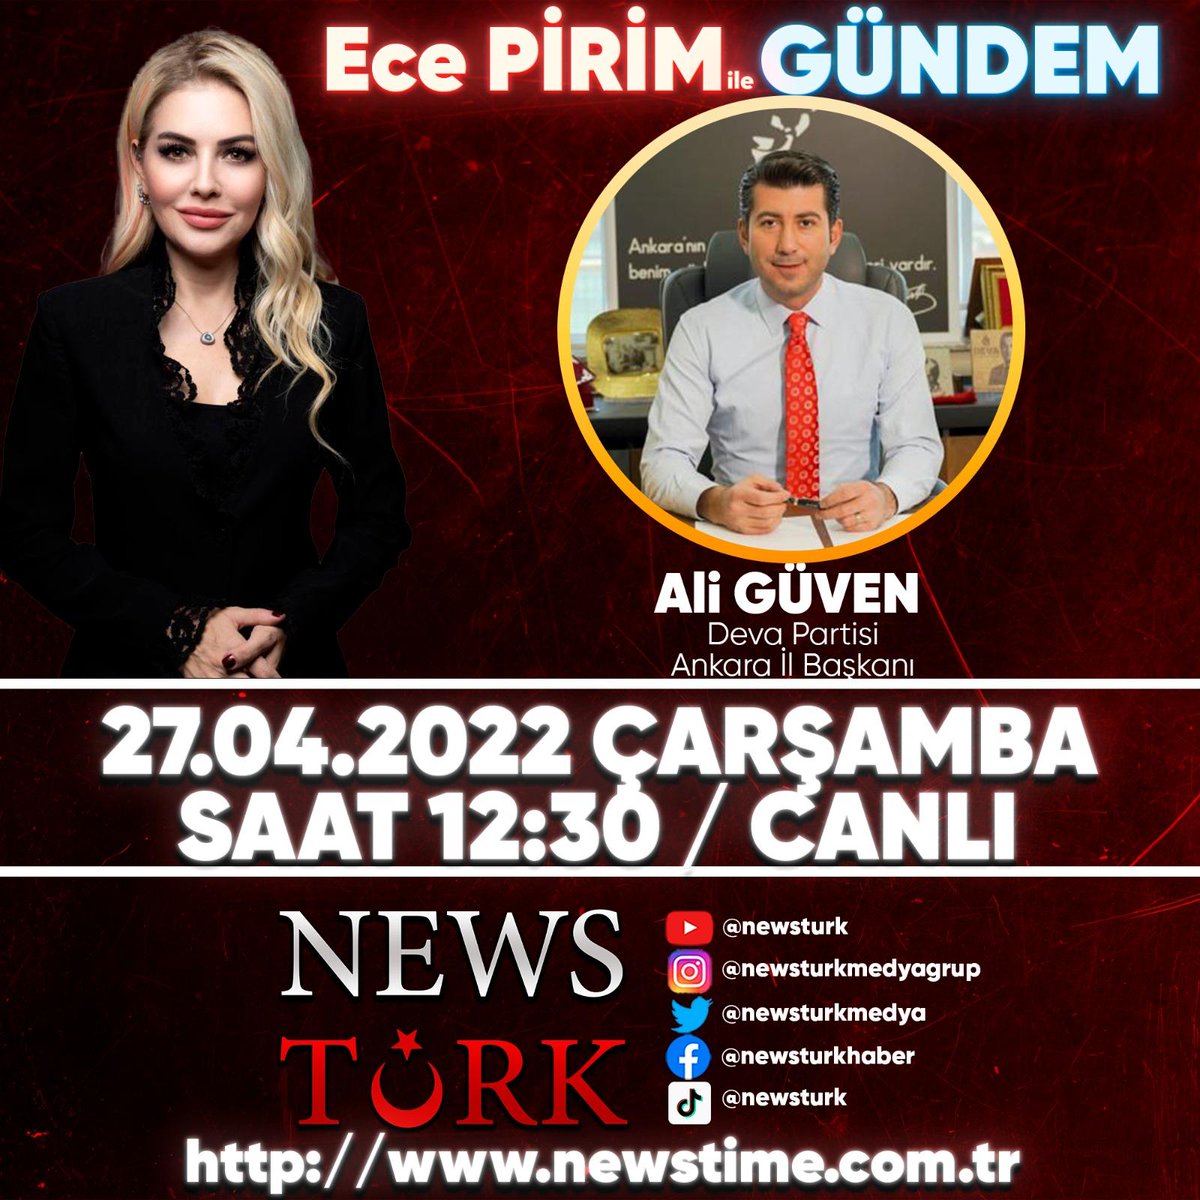 İl Başkanımız Ali GÜVEN, News Türk radyo yayınında ‘Ece PİRİM ile Gündem’ programına konuk oluyor.💧🌱

📺 YouTube/ newsturk
🗓 27 Nisan, Yarın
🕛 12.30

@aliguven_06
@NewsTurkMedya @EcePirim1